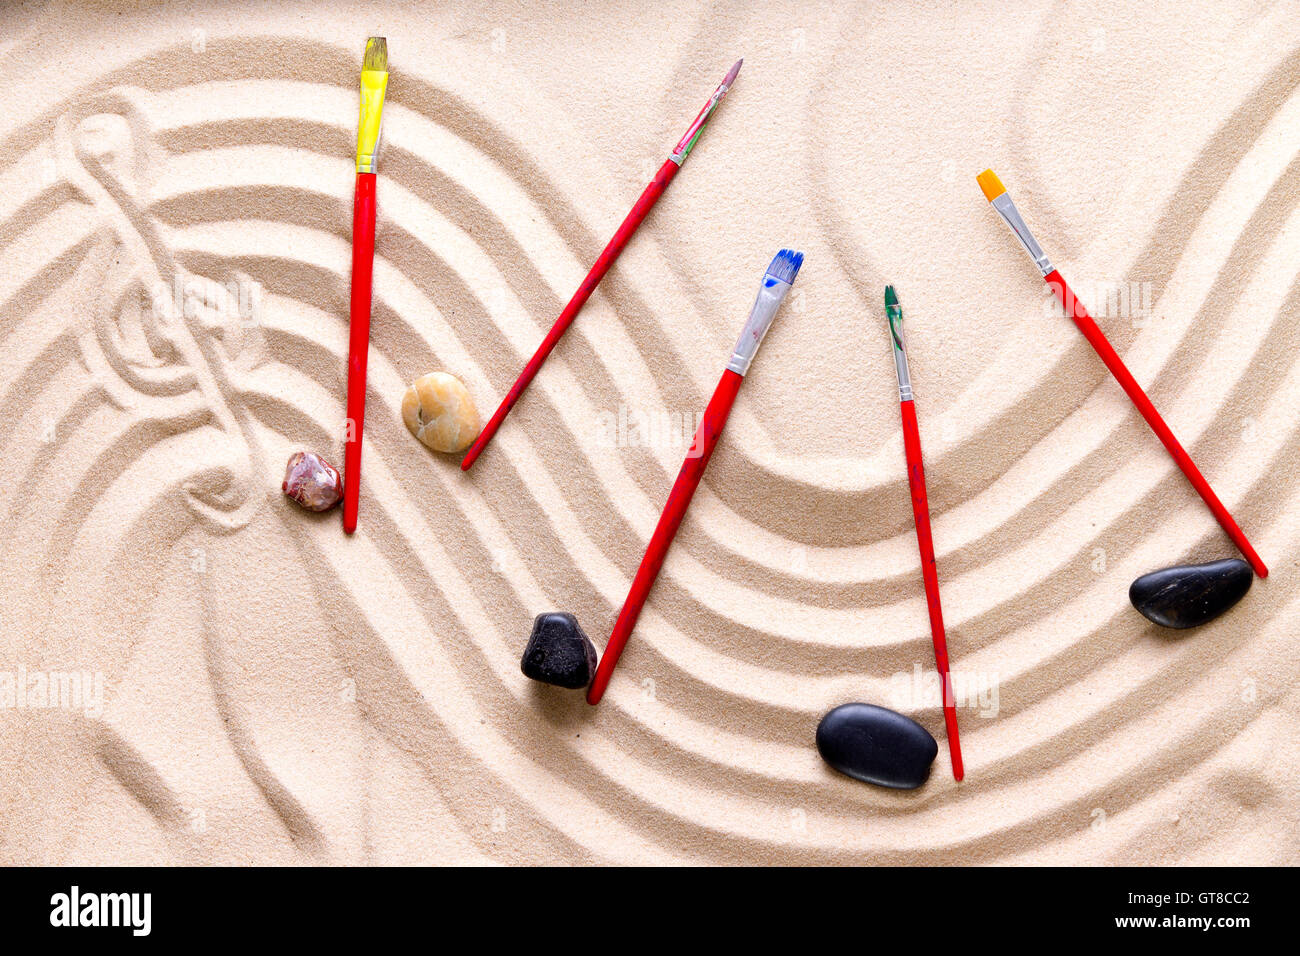 La armonía y la música en la playa con una artística imagen conceptual de una puntuación ondulado dibujado en la arena dorada con un clef agudo Foto de stock